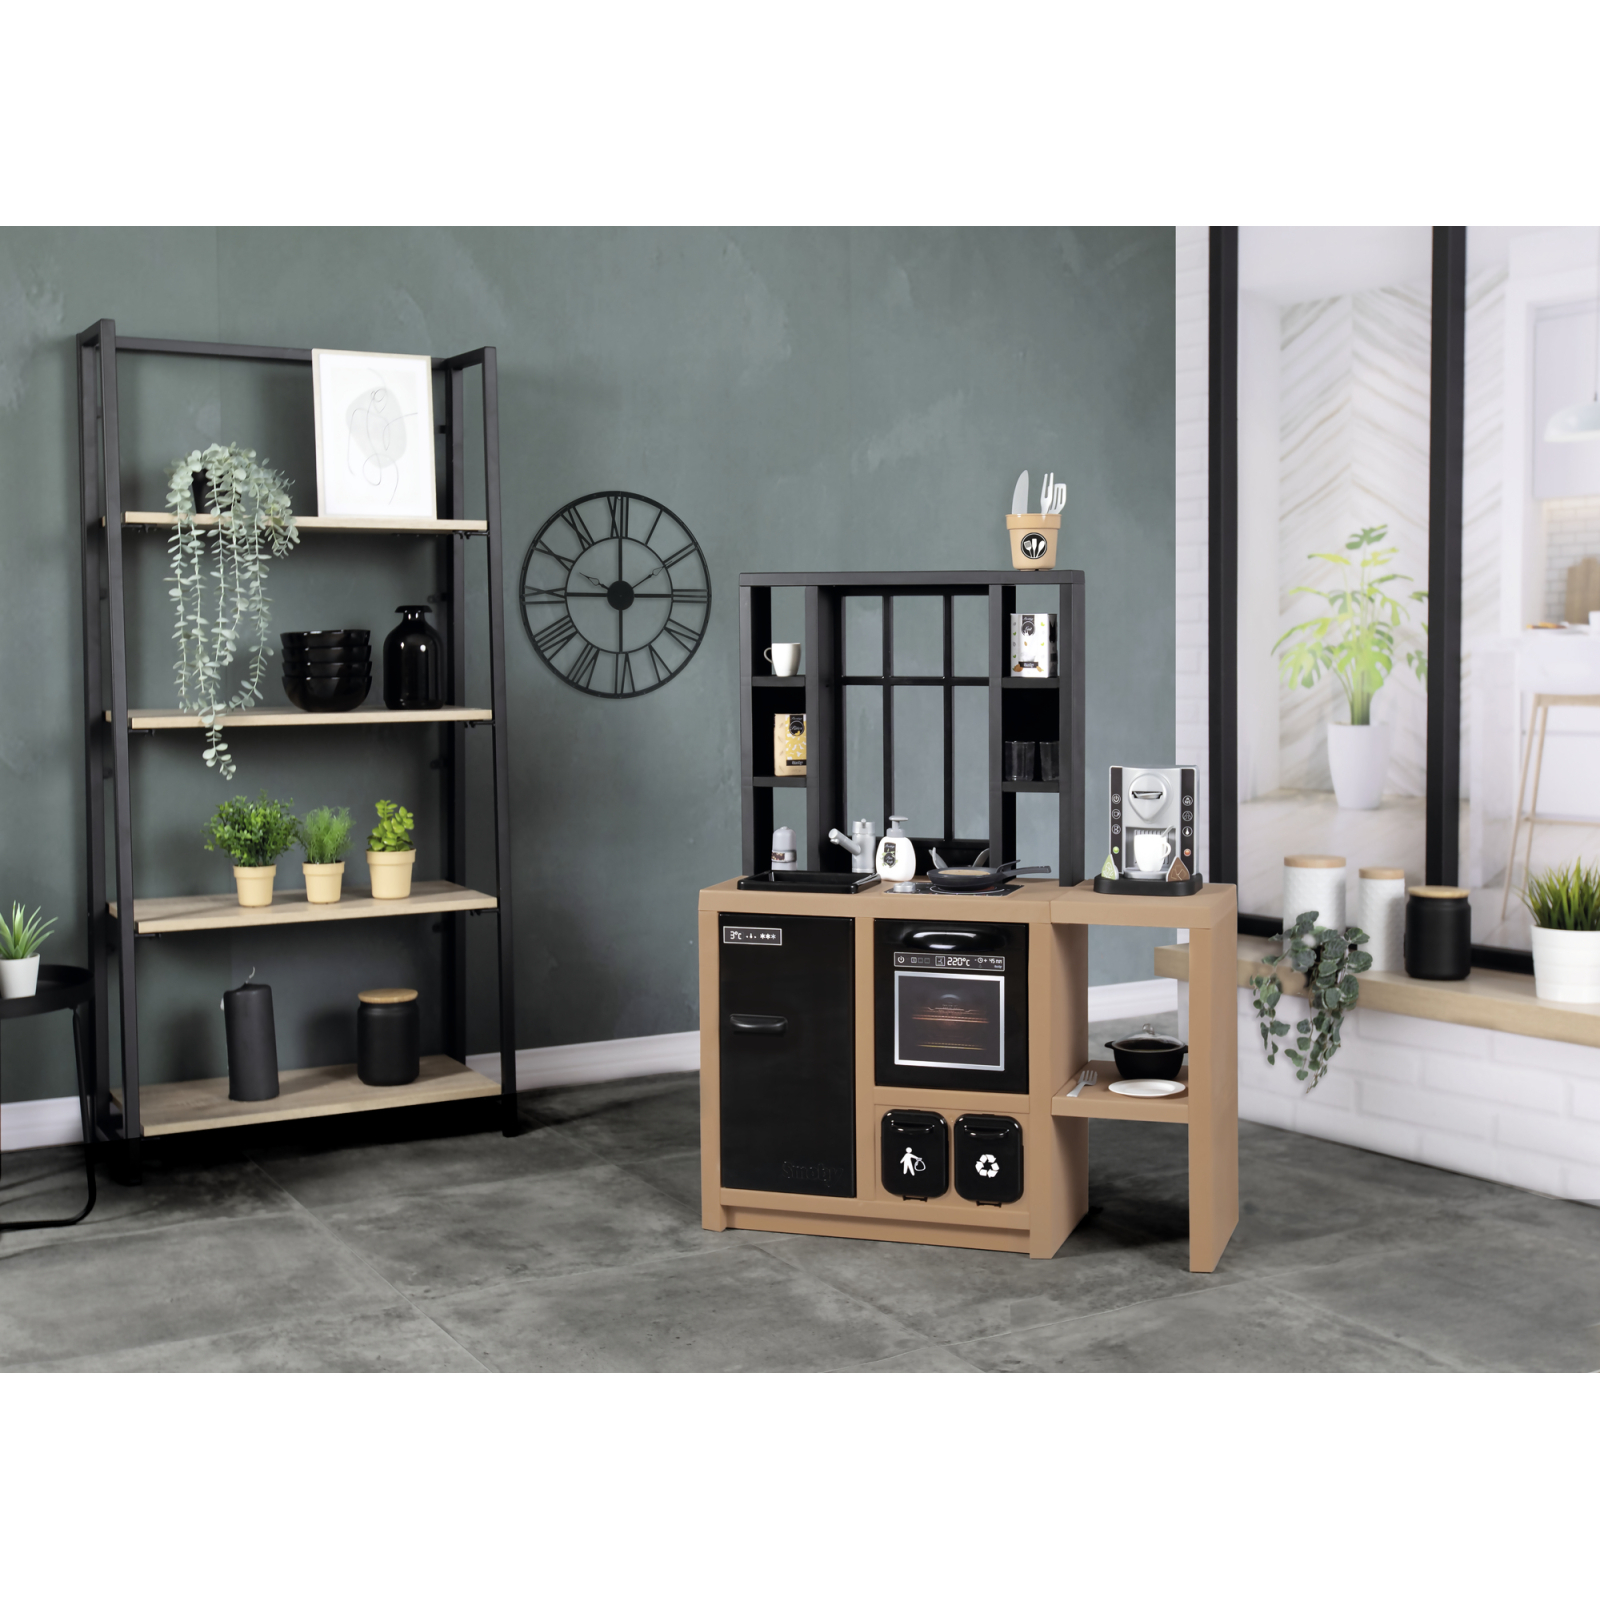 Игровой набор Smoby Интерактивная кухня Лофт с кофеваркой, аксессуарами и звуковым эффектом (312600) изображение 14